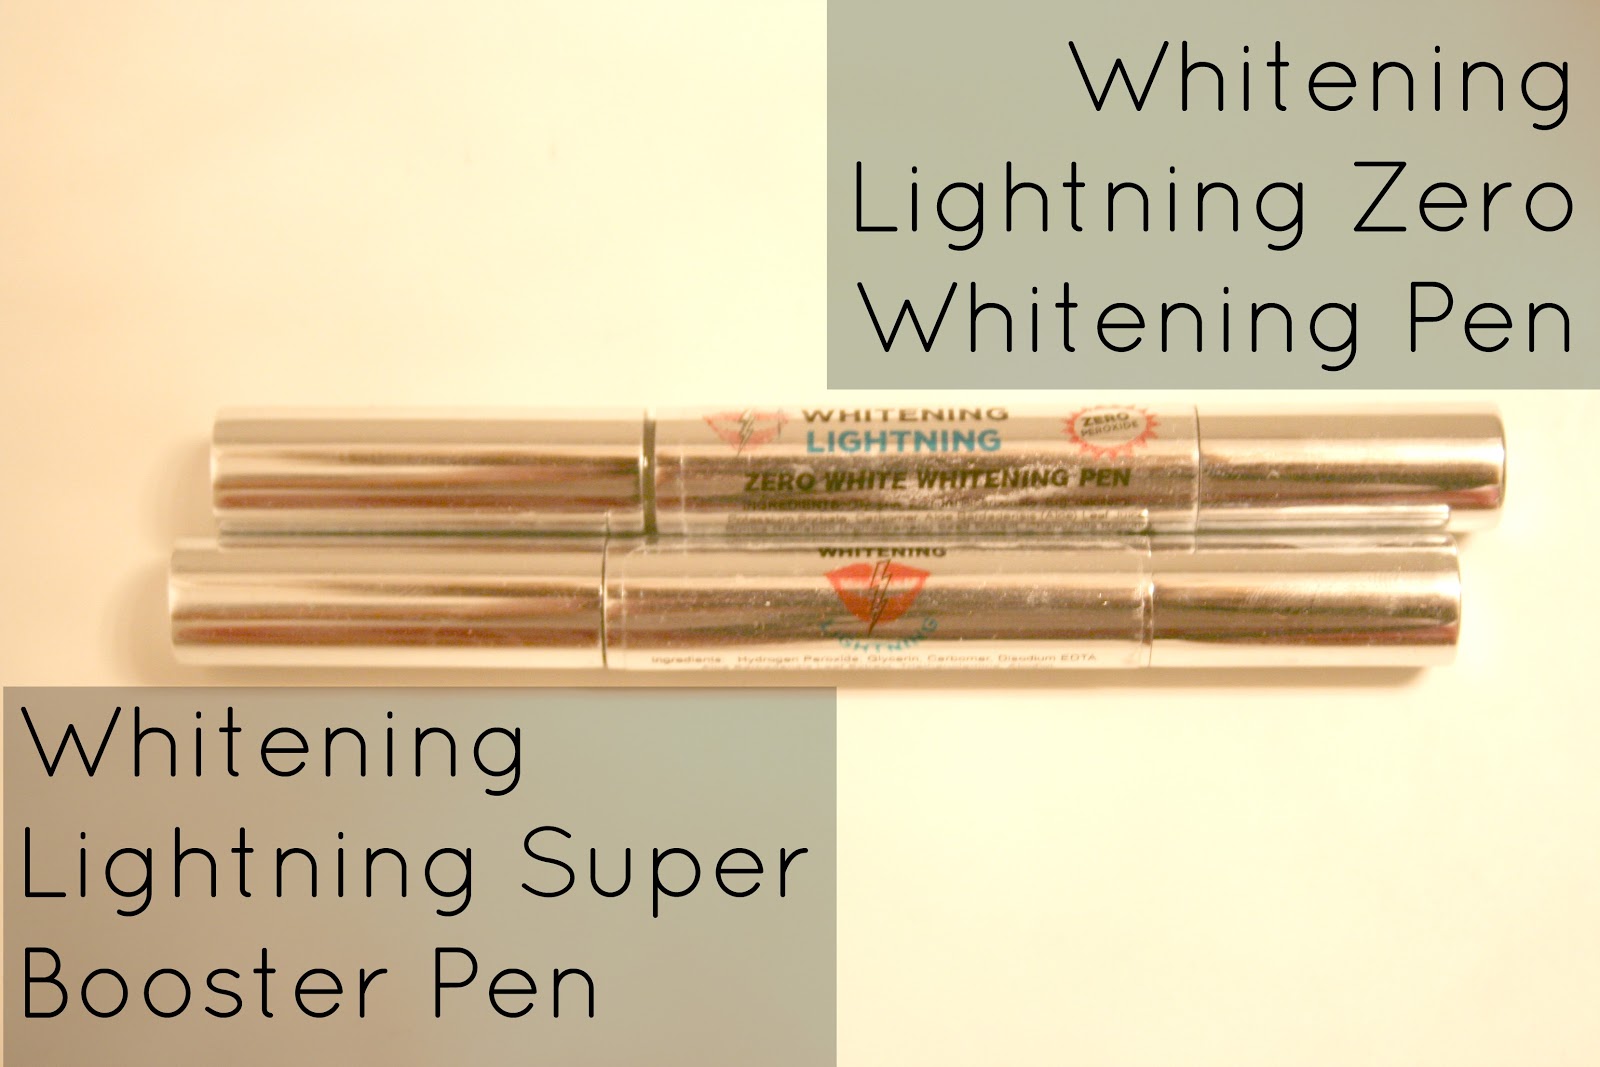 whitening lightning super booster teeth whitening pen